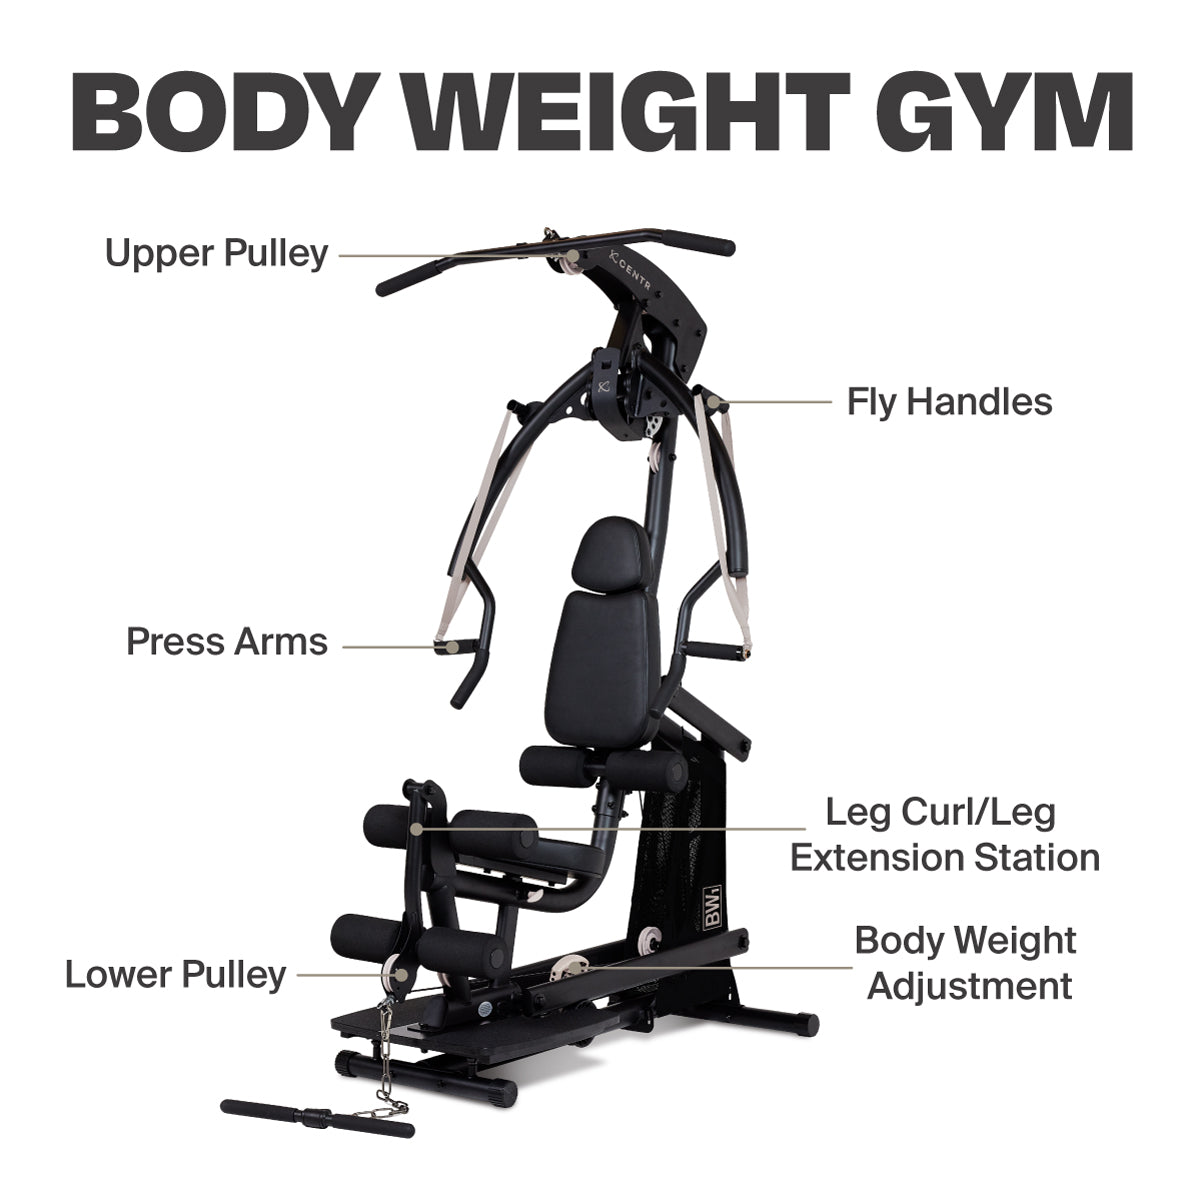 Inspire Fitness Body Lift Home Gym, Home Gym Equipment